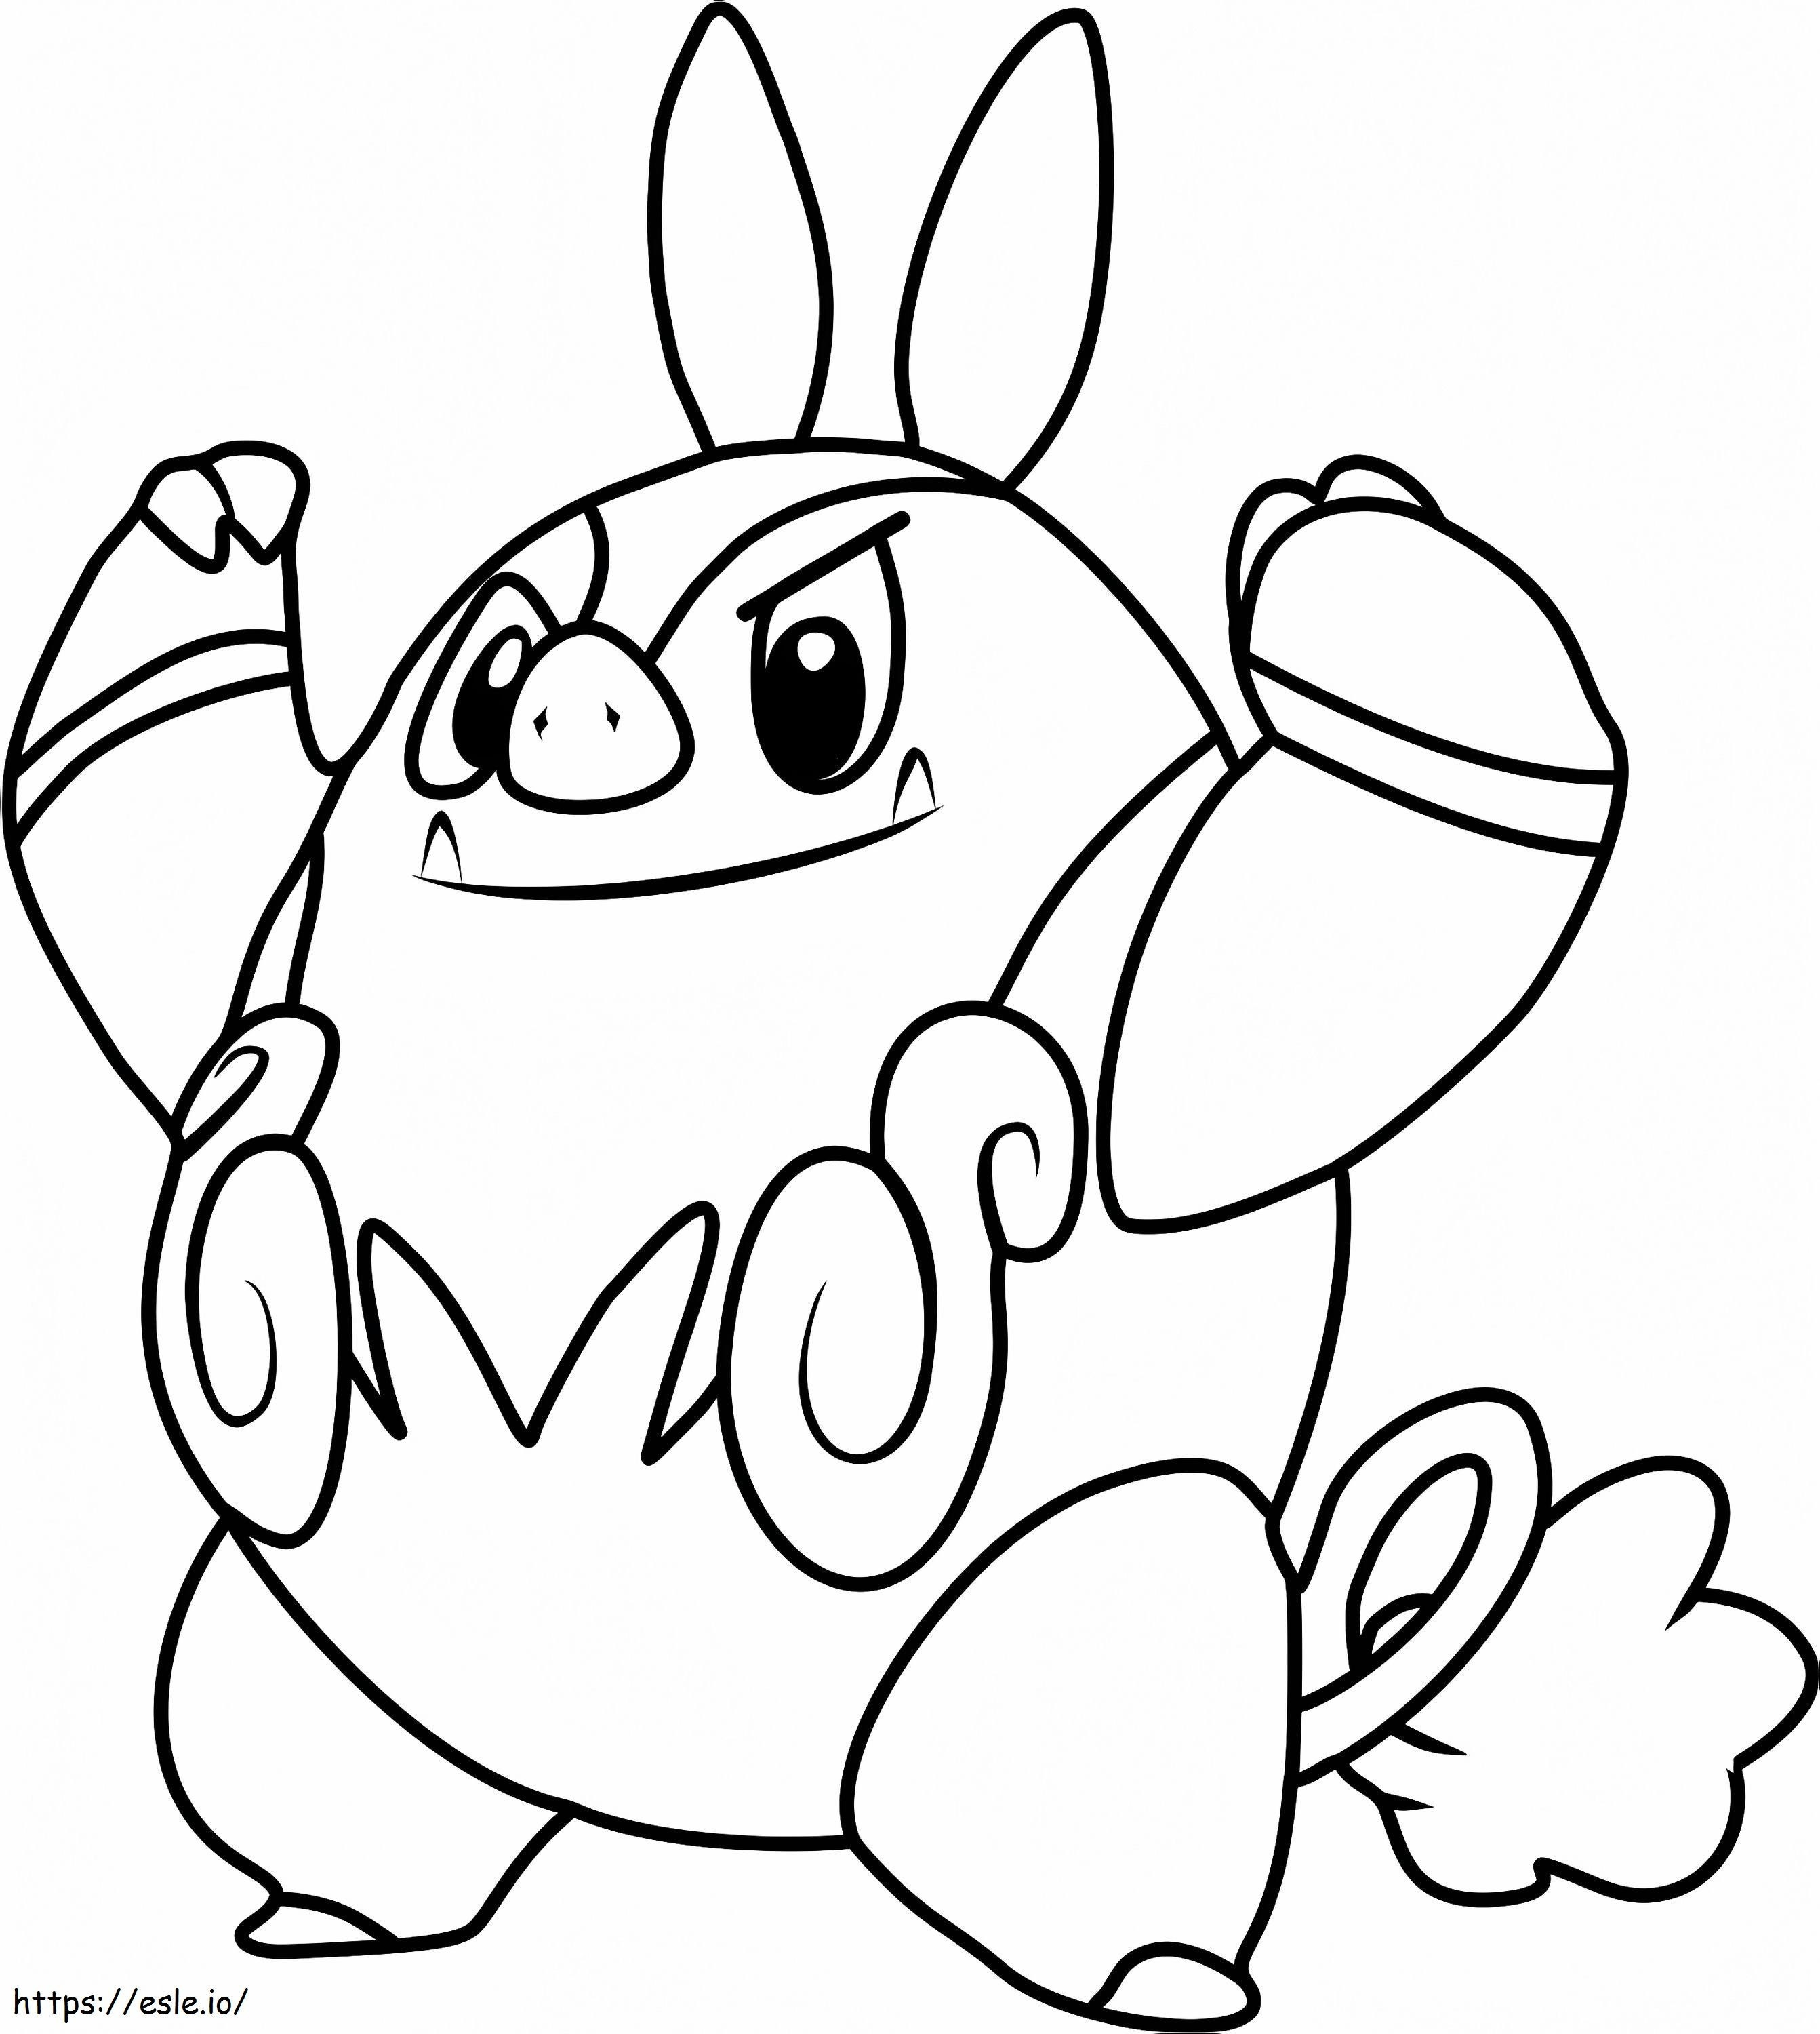 Coloriage  Pignite Pokémon souriant A4 à imprimer dessin